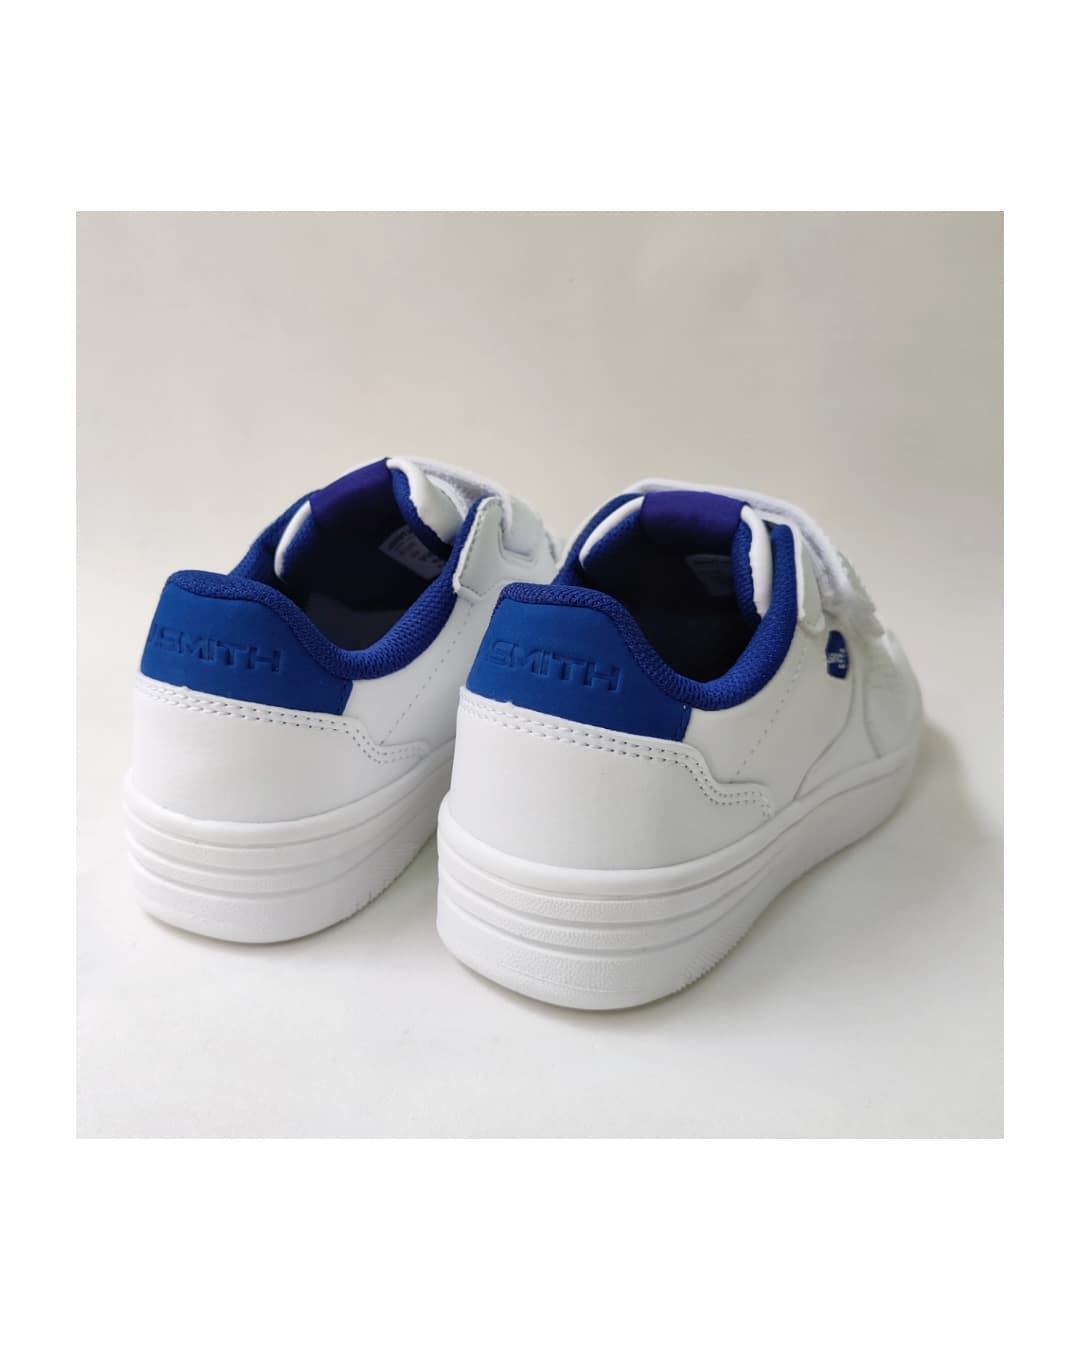 John Smith Vimon Jr 24V White Sneakers for Kids - Image 3